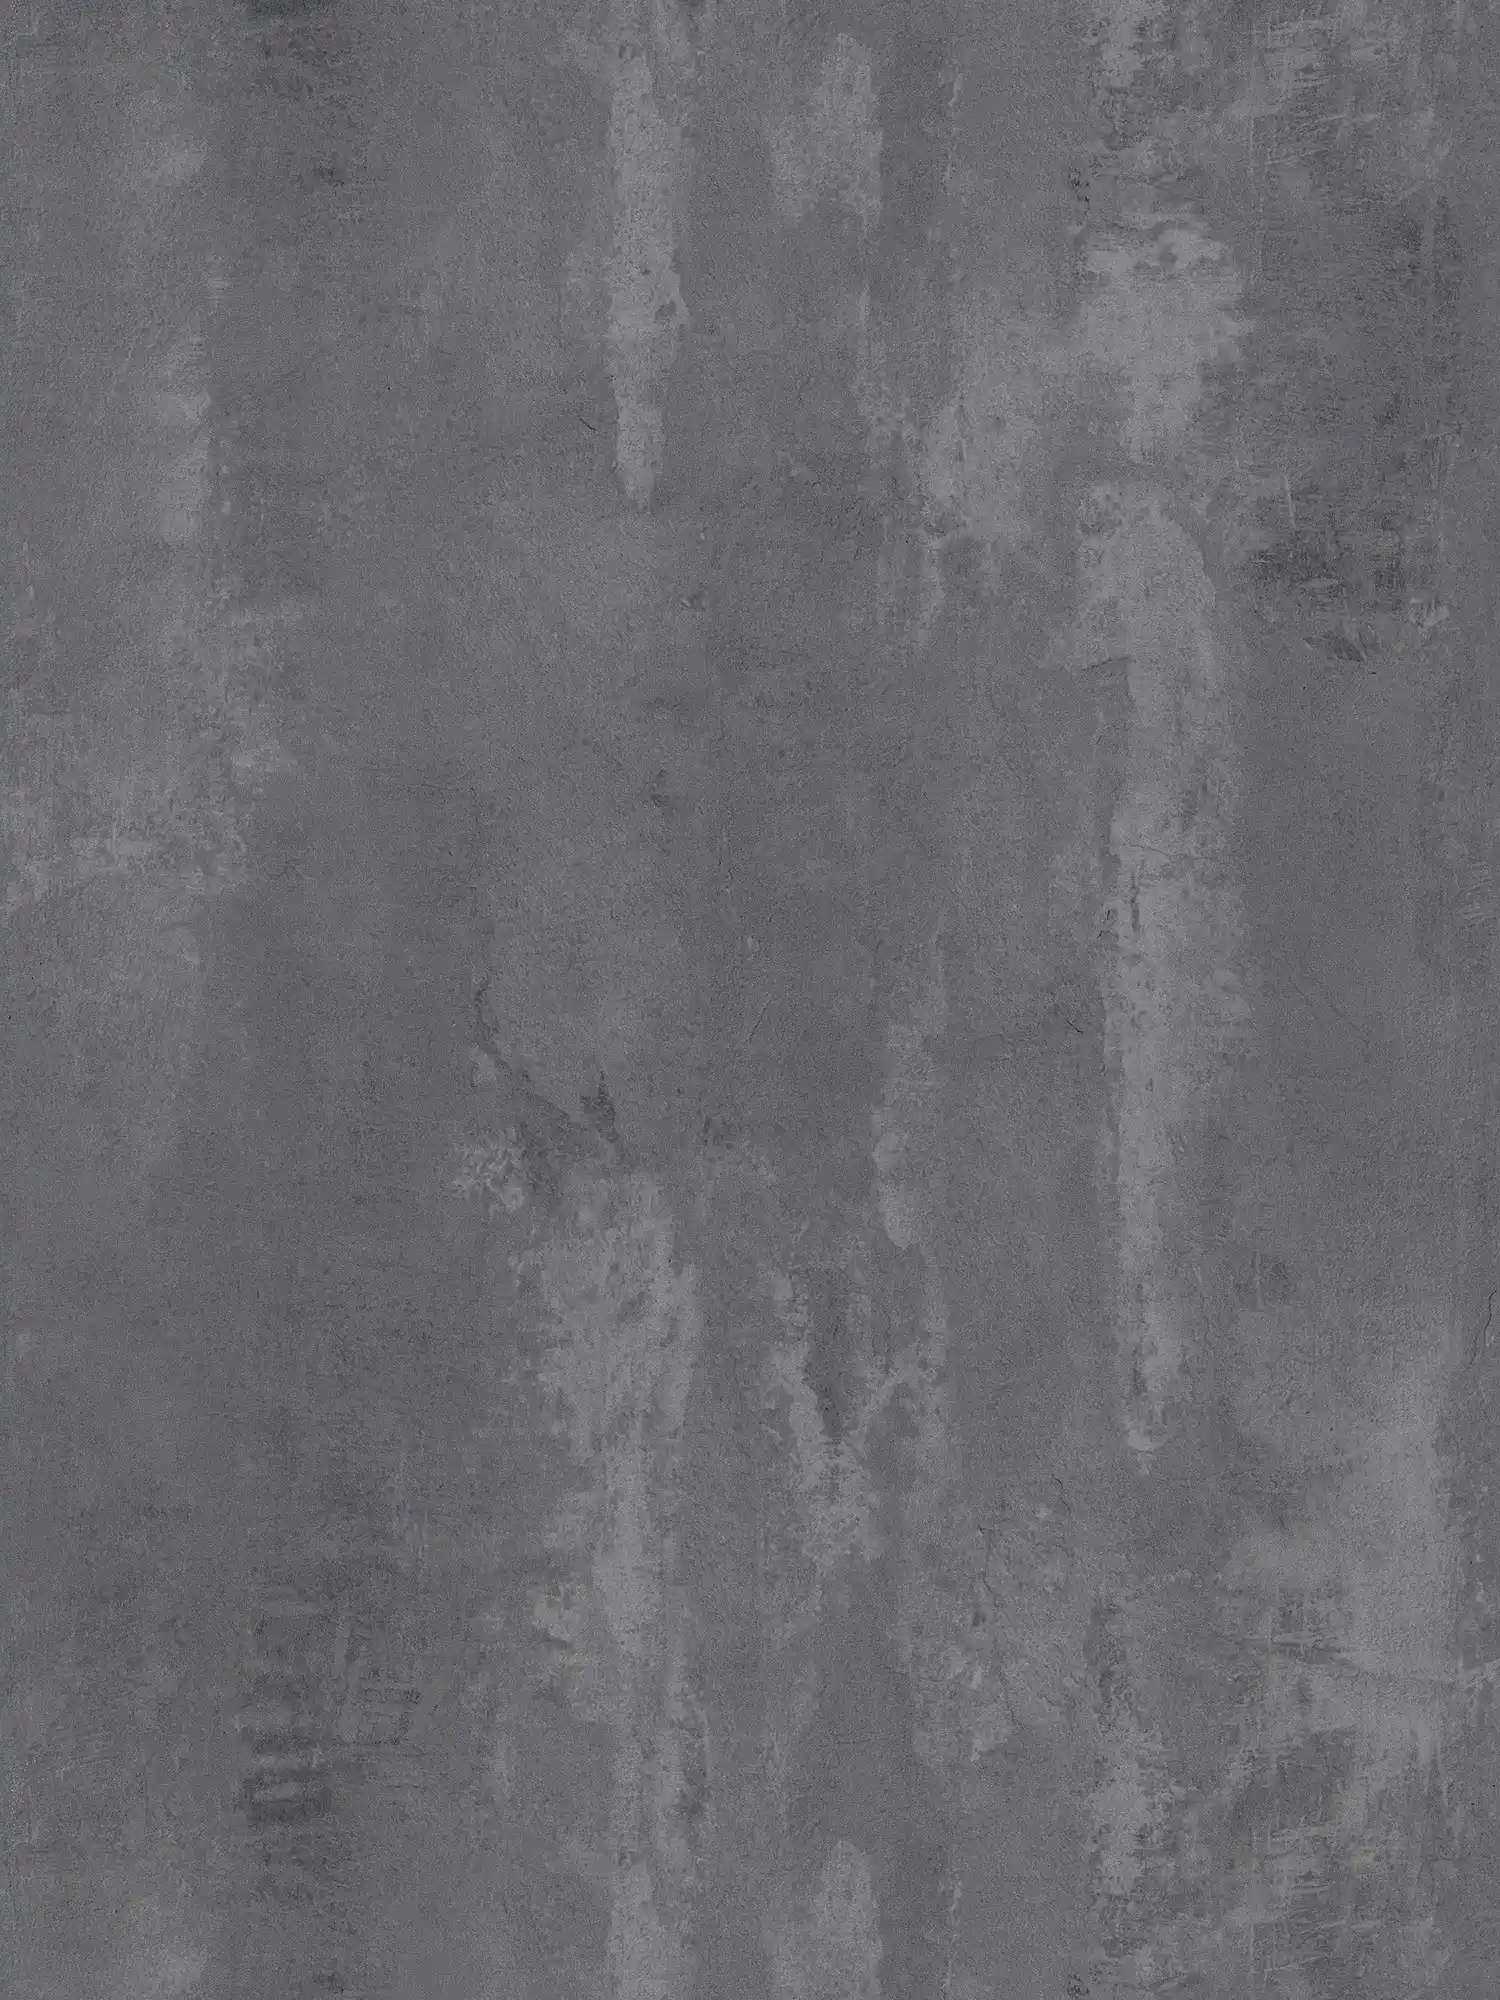         Dunkle Betontapete rustikales Muster & Industrial Style – Grau
    